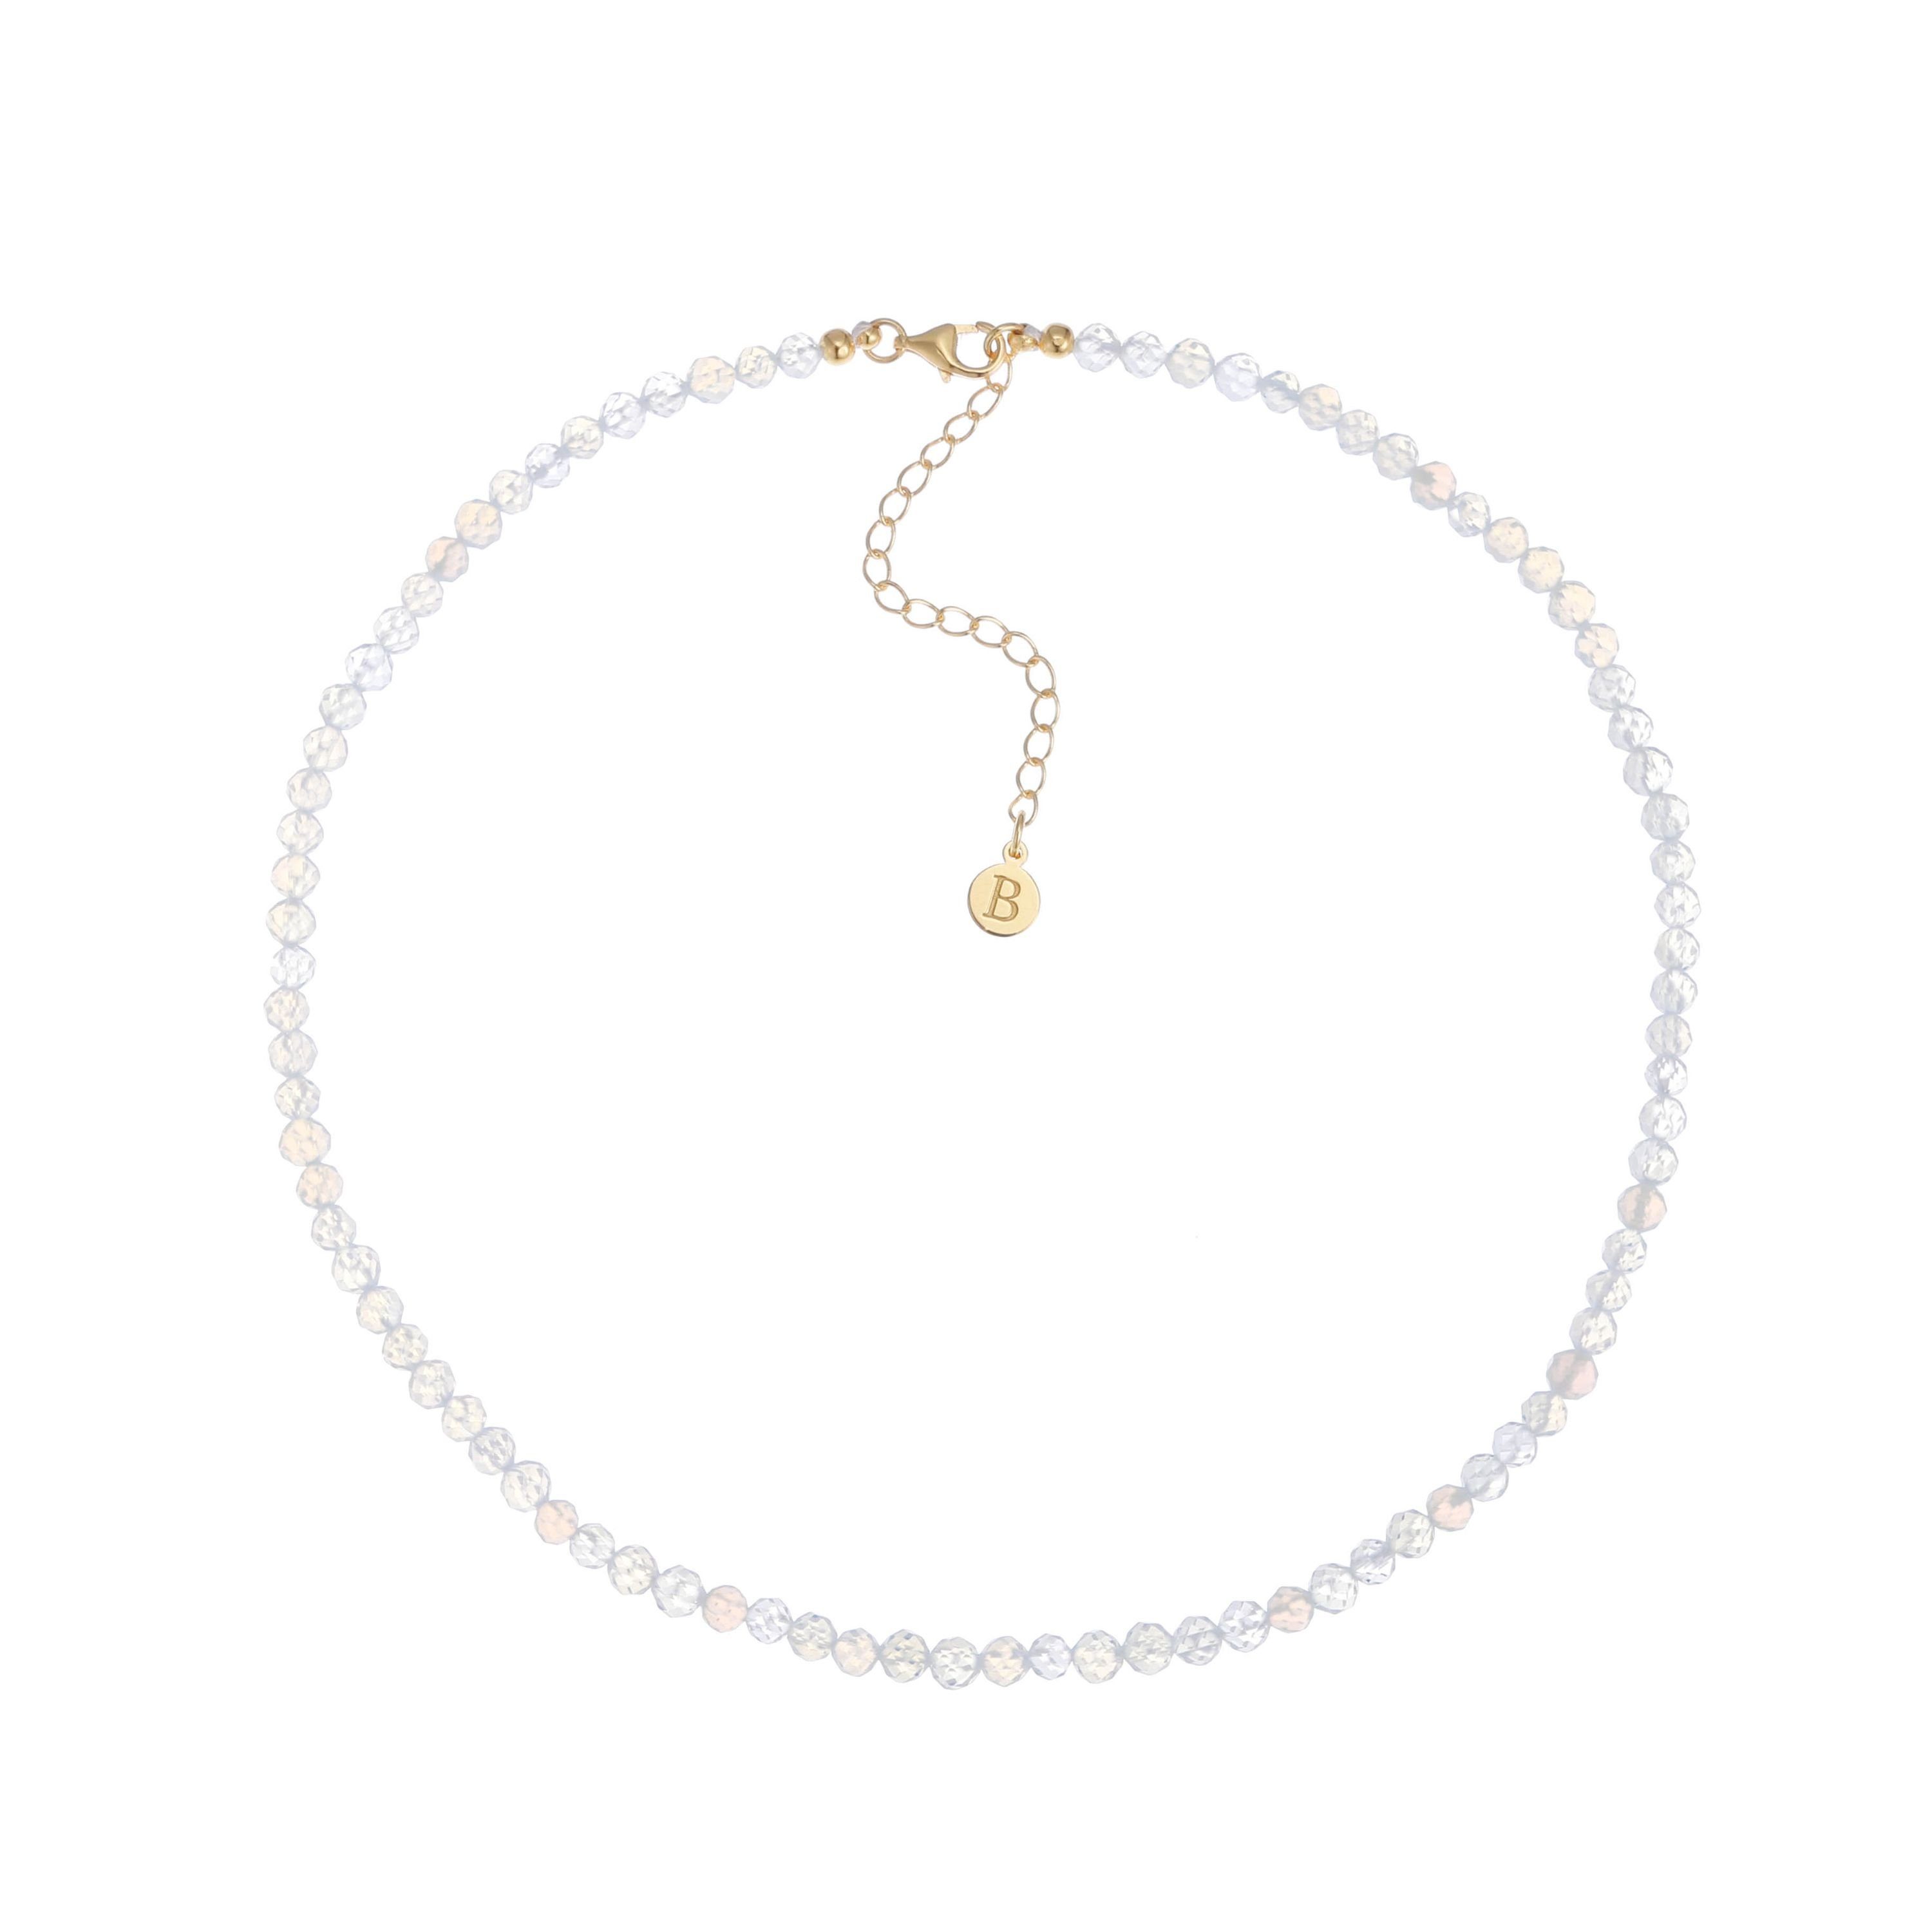 Brandlinger Perlenkette Halskette Victoria, 925 Silber vergoldet, Opalith